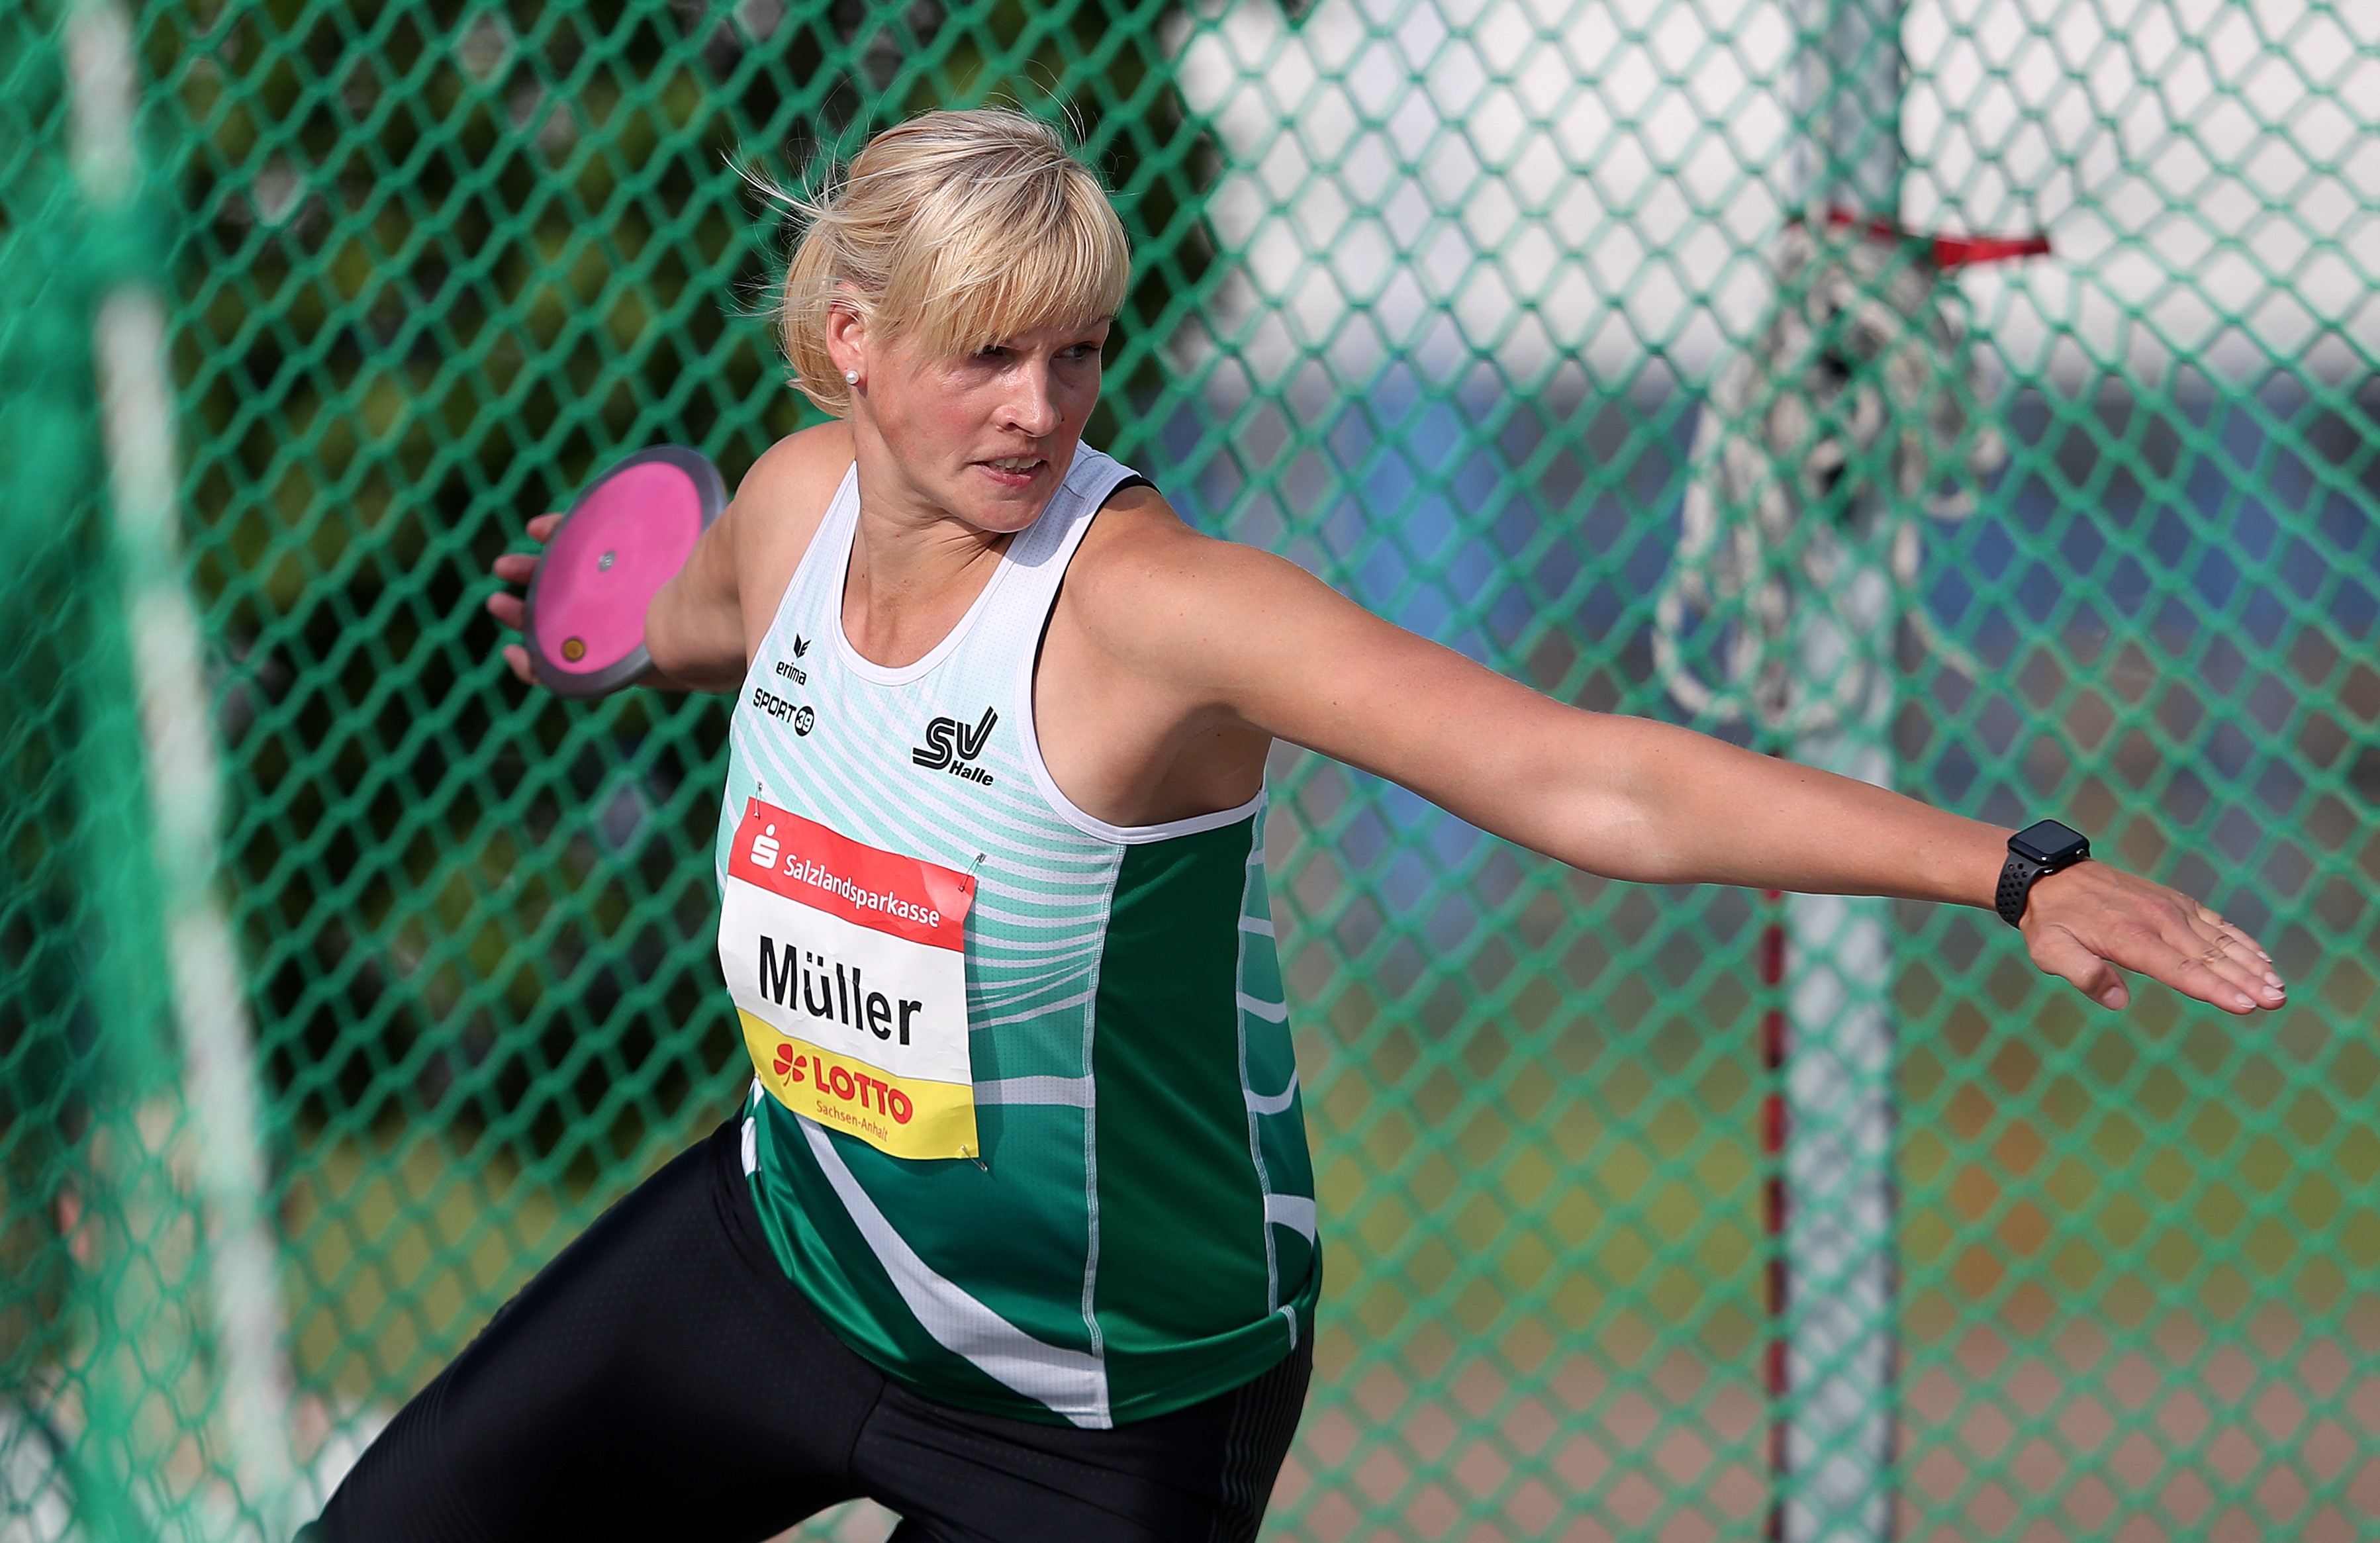 Nadine Müller (SV Halle) ist eine von fünf nominierten Leichtathleten aus Sachsen-Anhalt für die WM 2019 in Doha.